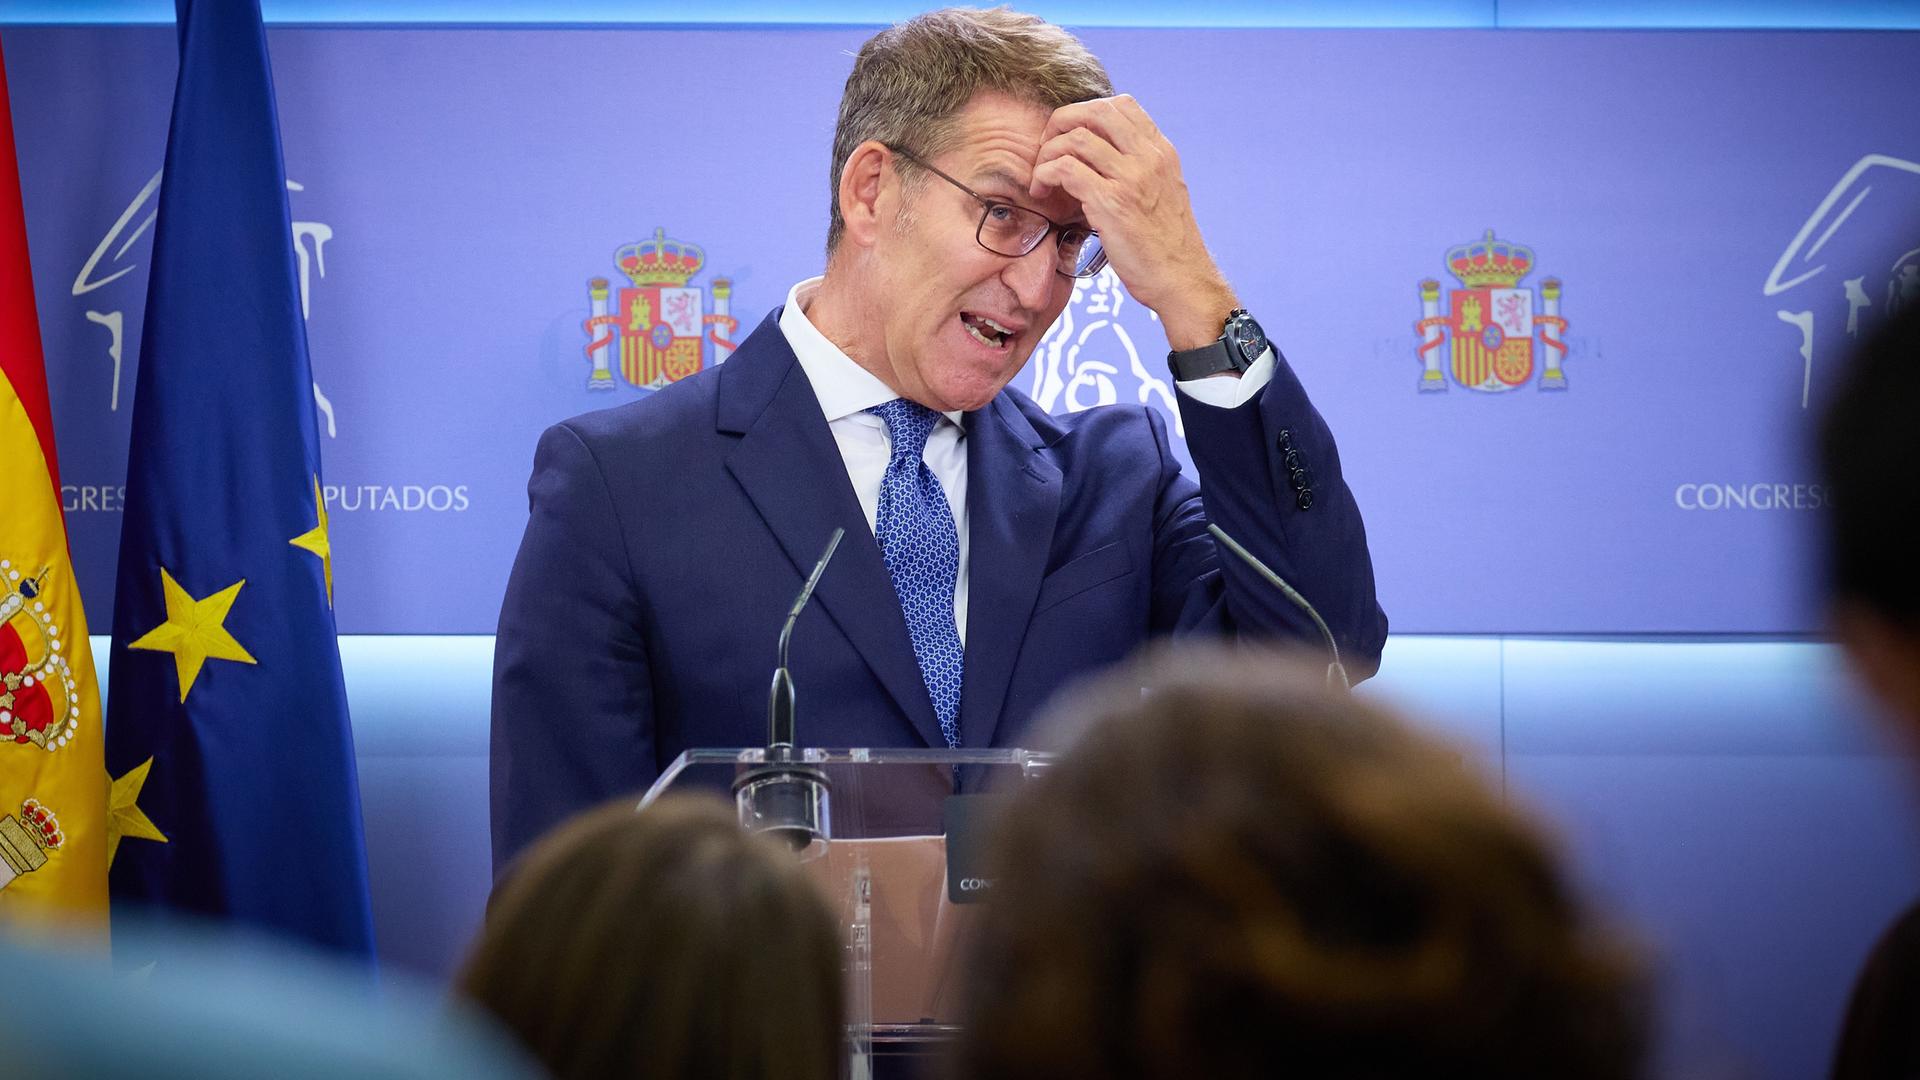 Formación de gobierno en España – las negociaciones entre Feijóo y Sánchez fracasaron